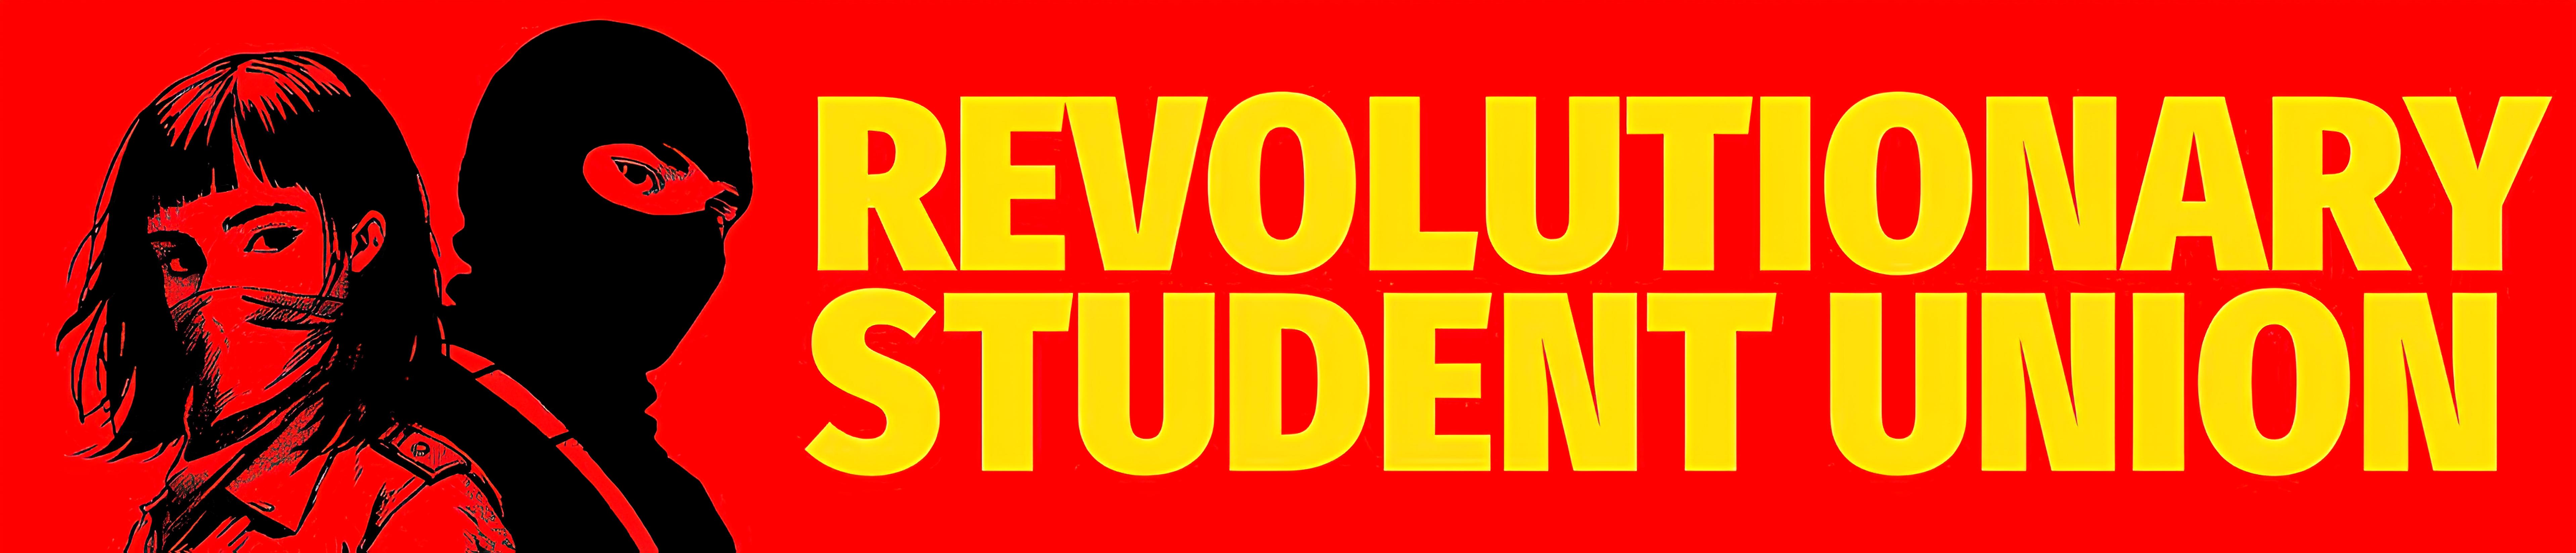 Revolutionary Student Union